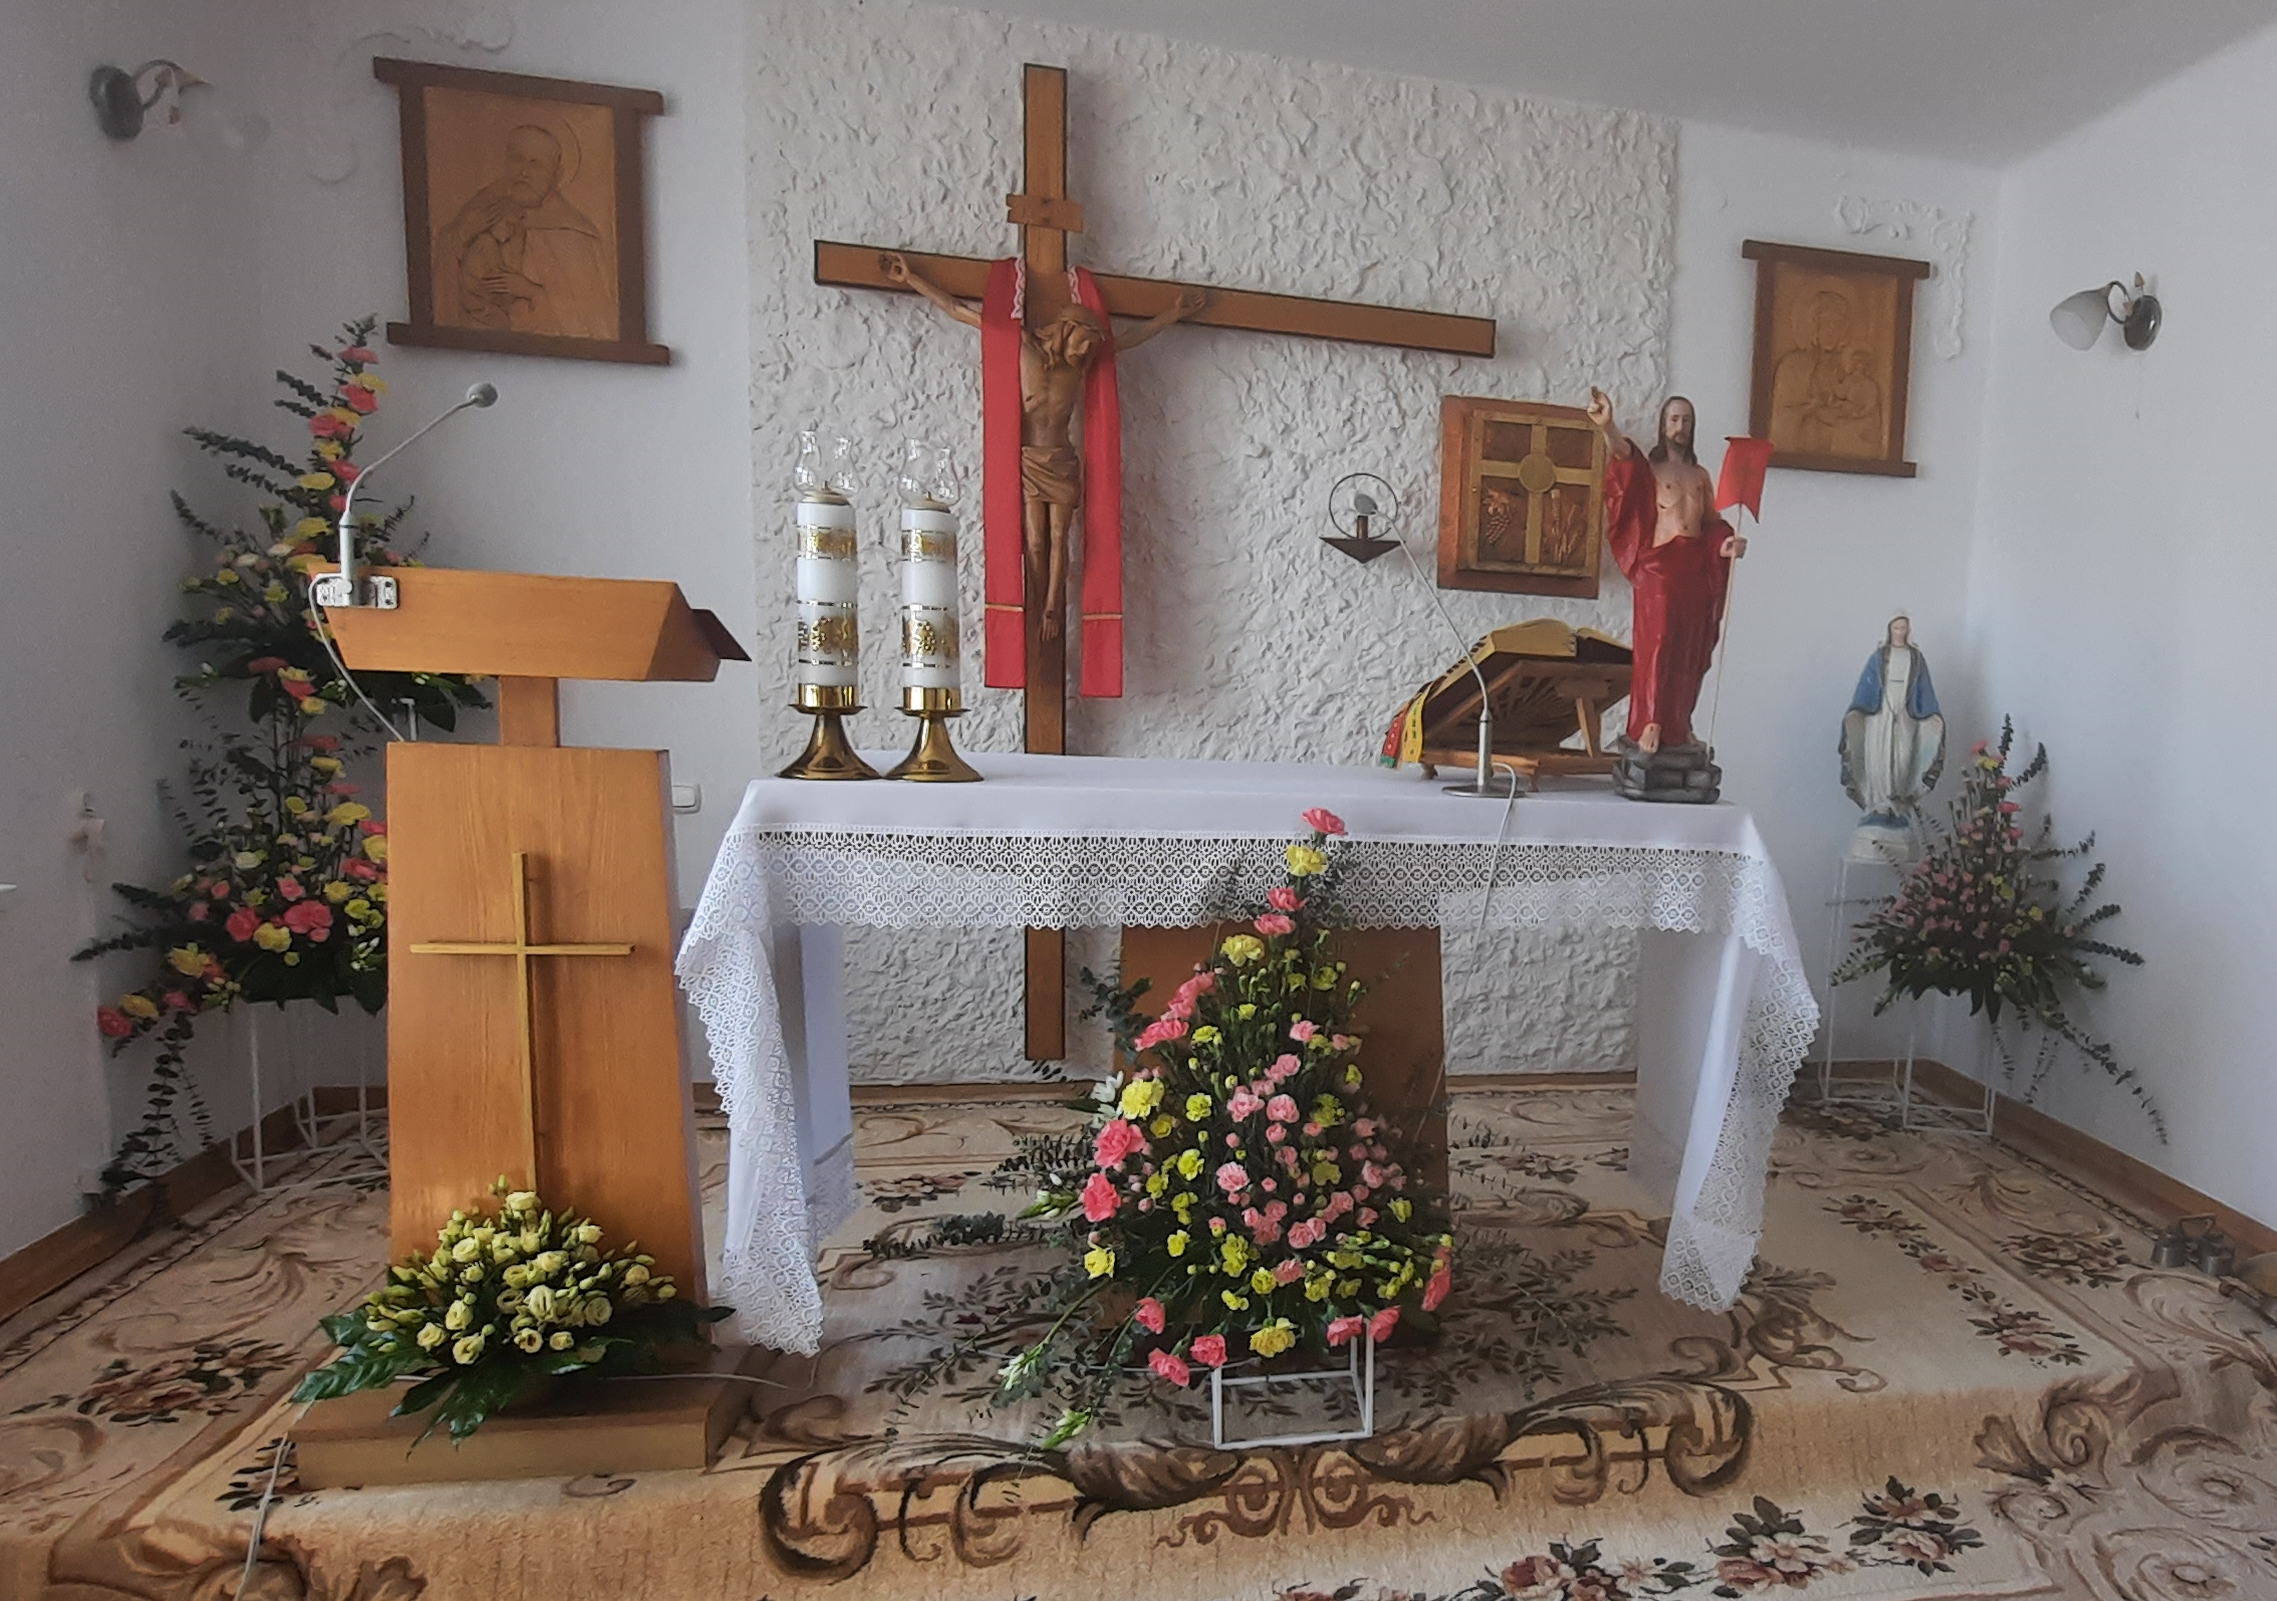 Zdjęcie przyozdobionego kwiatami ołtarza w kaplicy